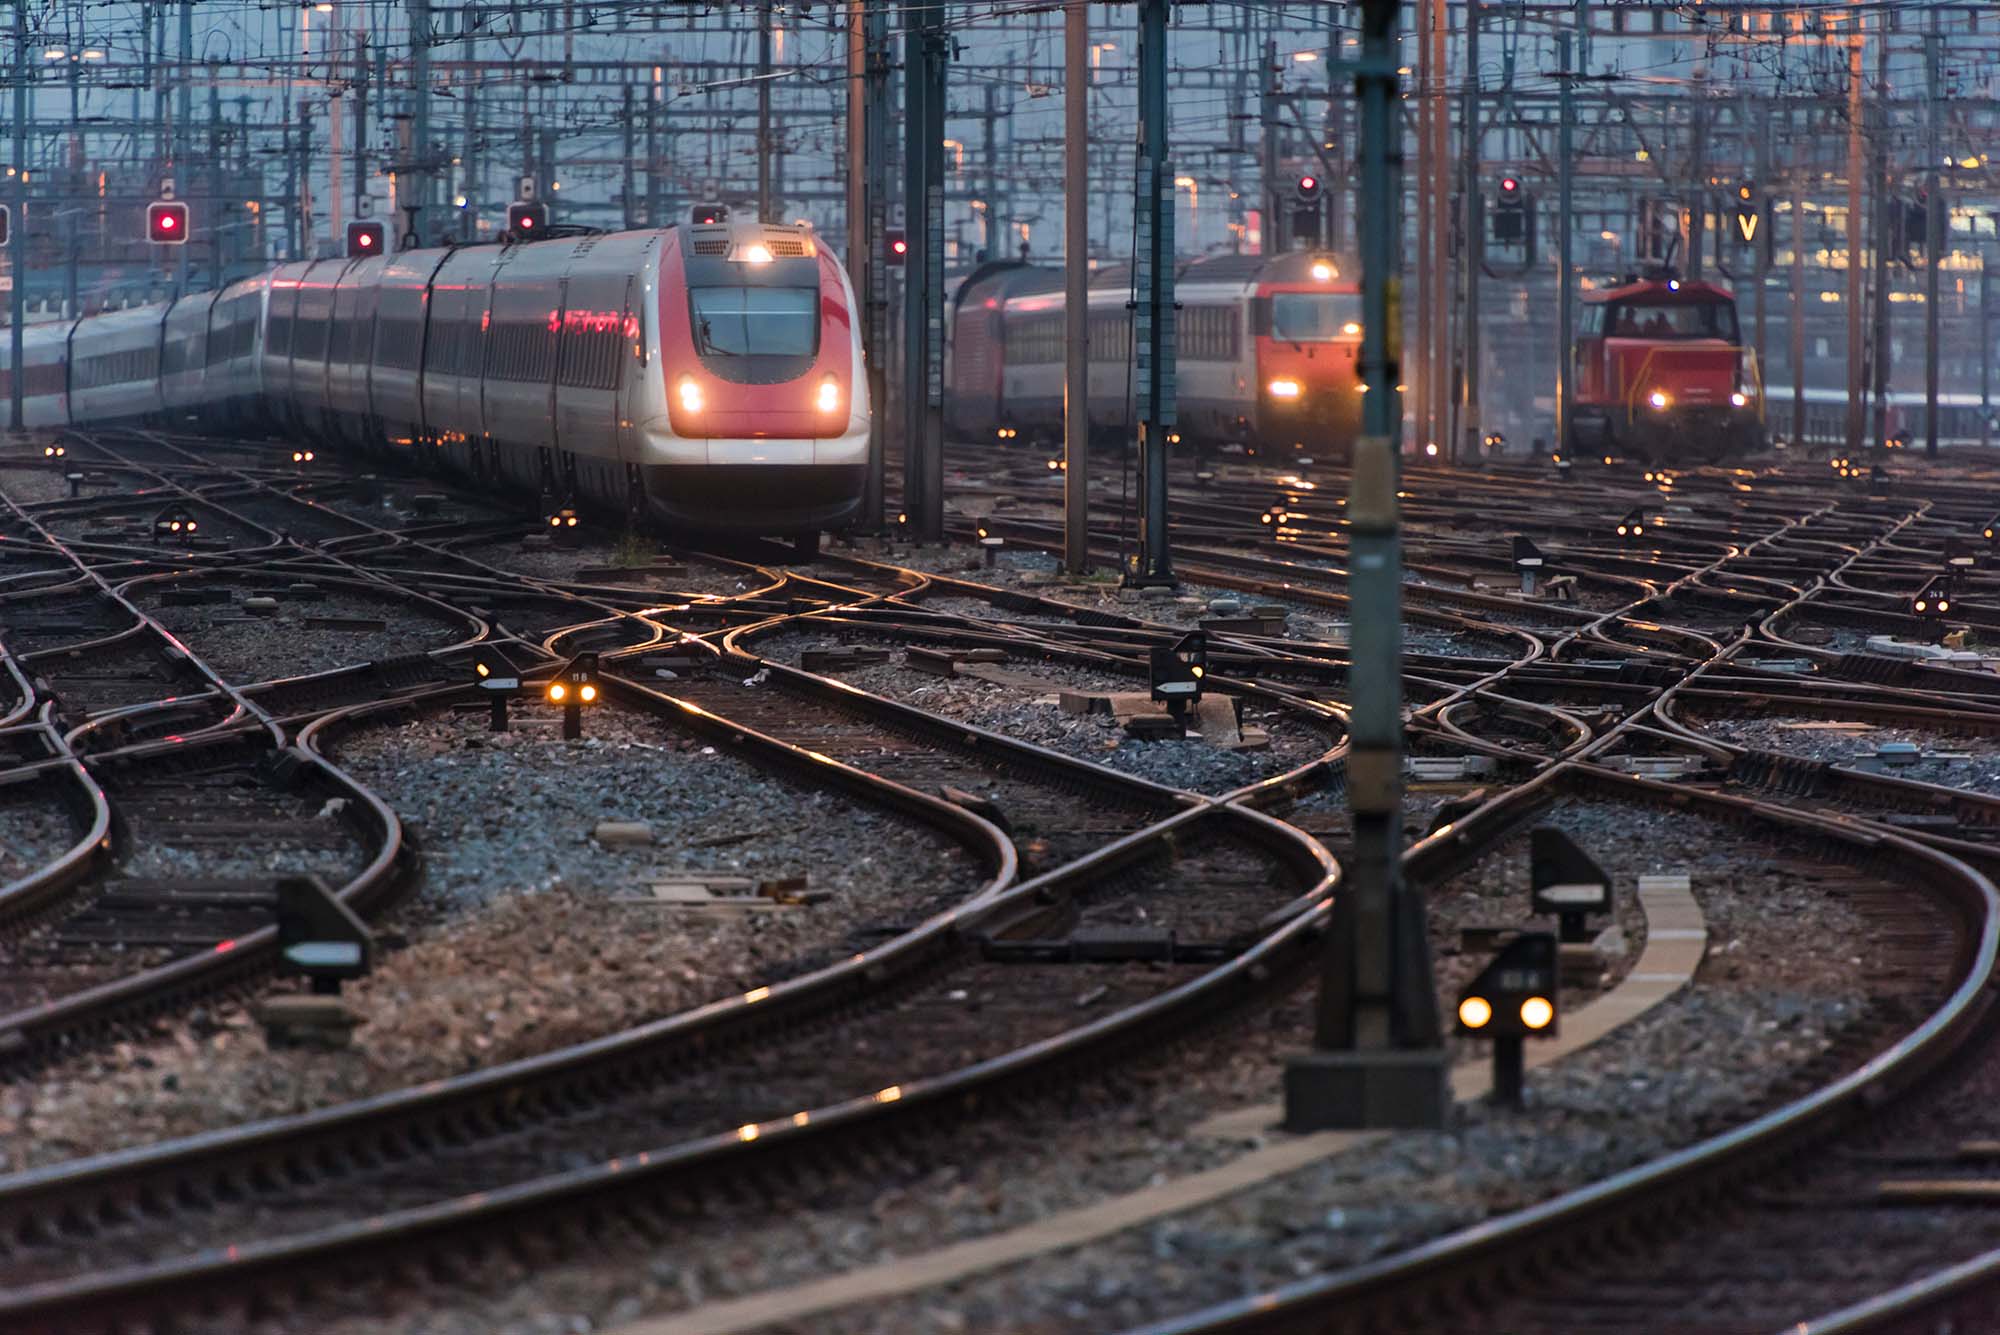 Trains running in a railway yard